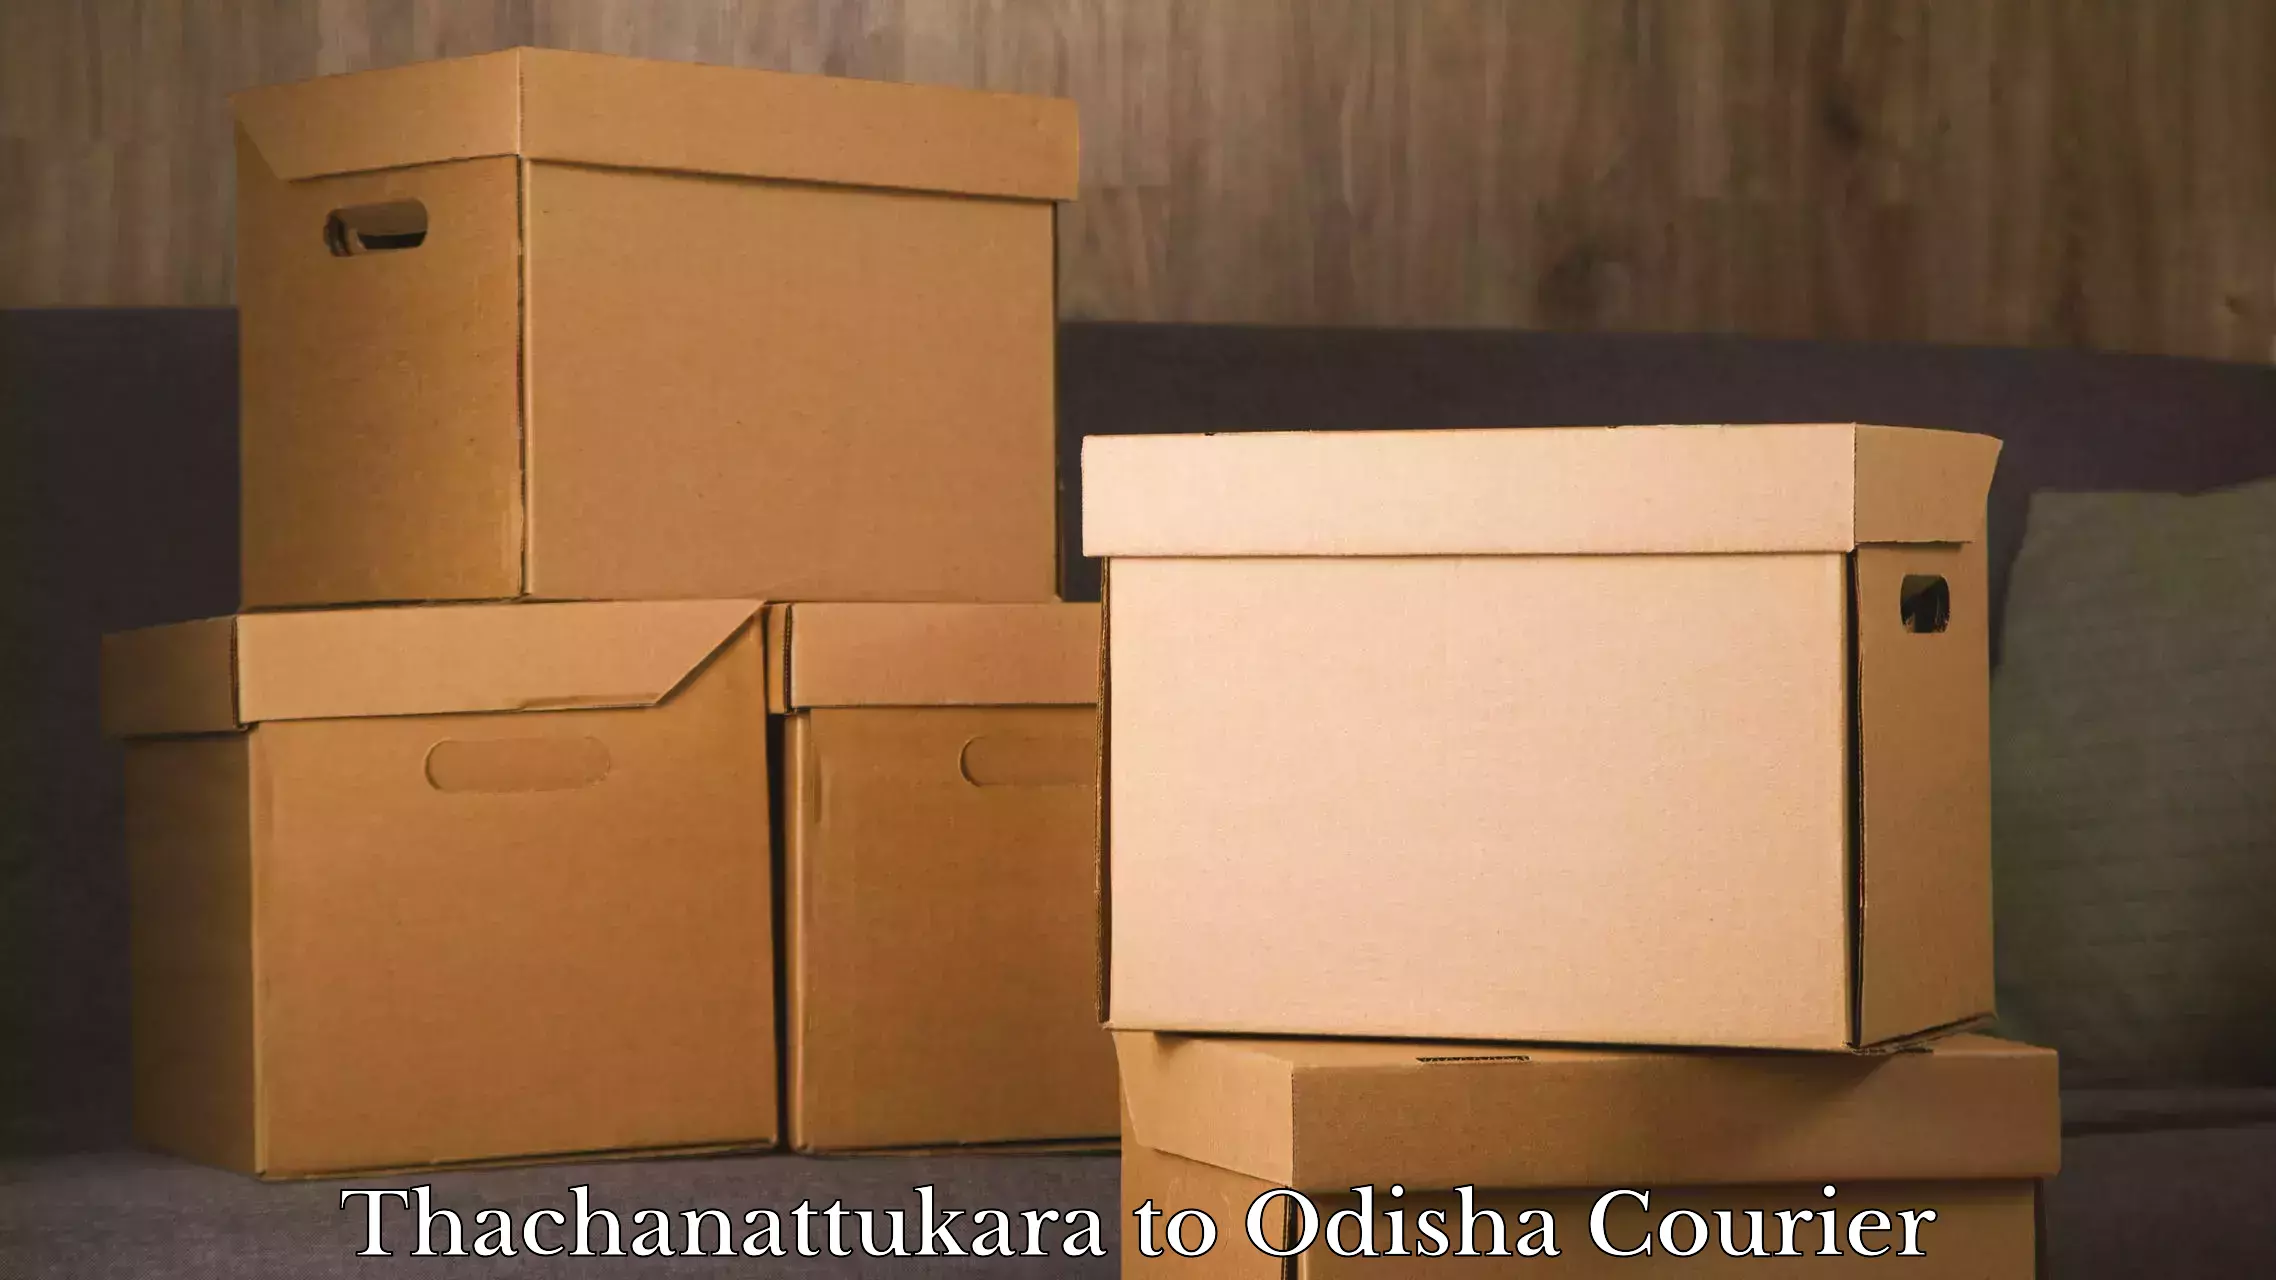 Unaccompanied luggage service Thachanattukara to Jaraka